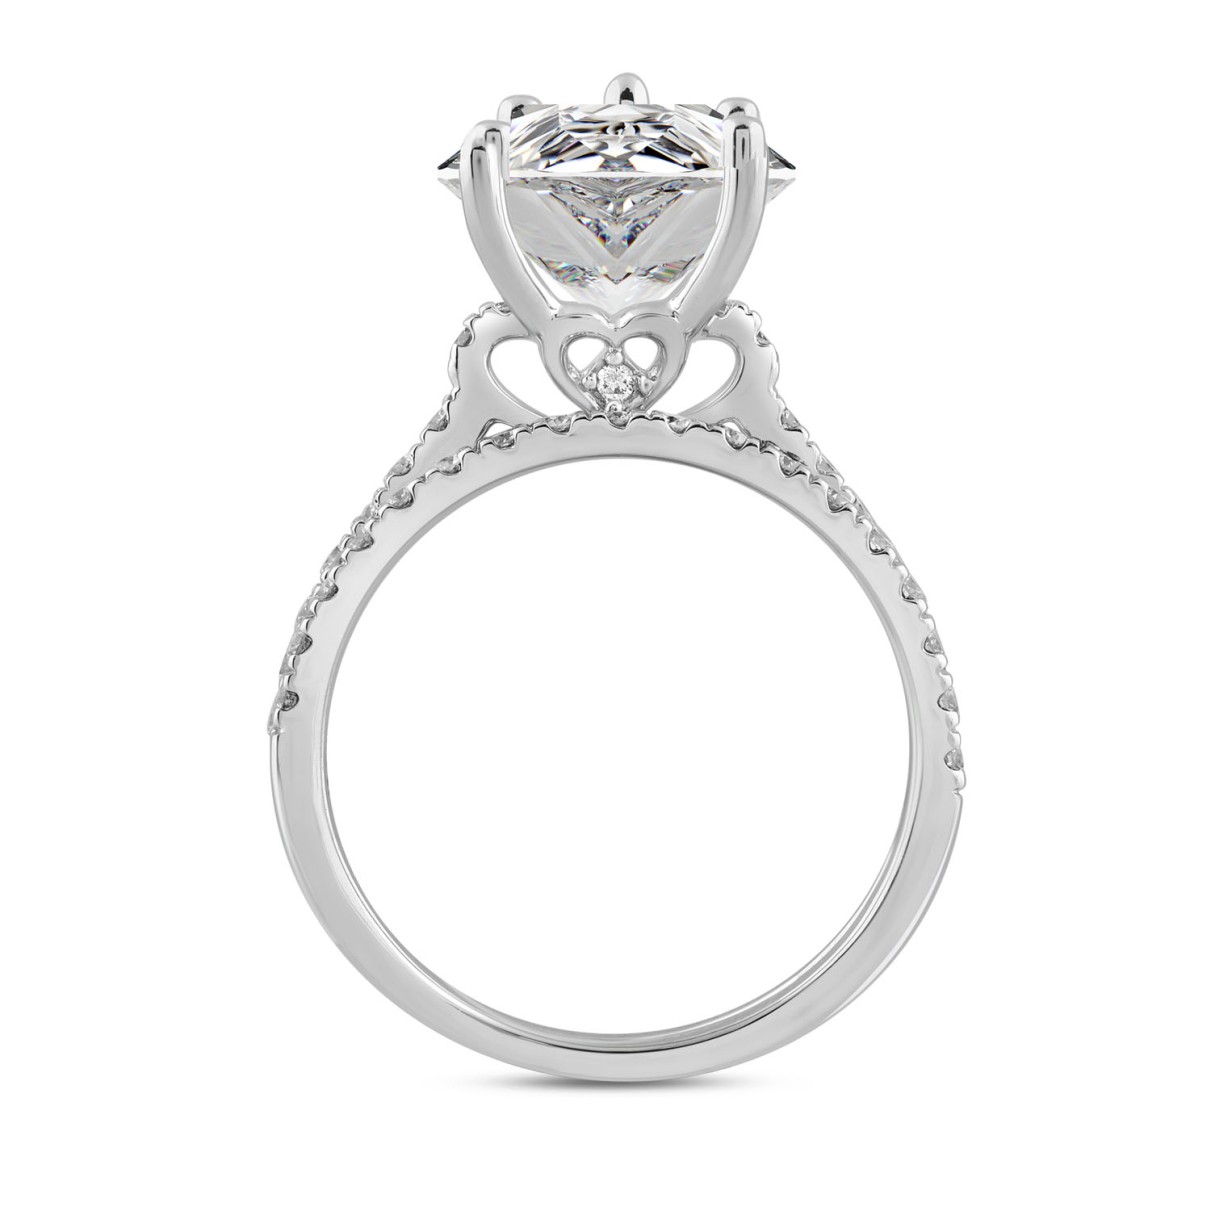 LADIES BRIDAL SET 4 1/2CT ROUND/PEAR DIAMOND 14K WHITE GOLD (CENTER STONE PEAR DIAMOND 4CT )